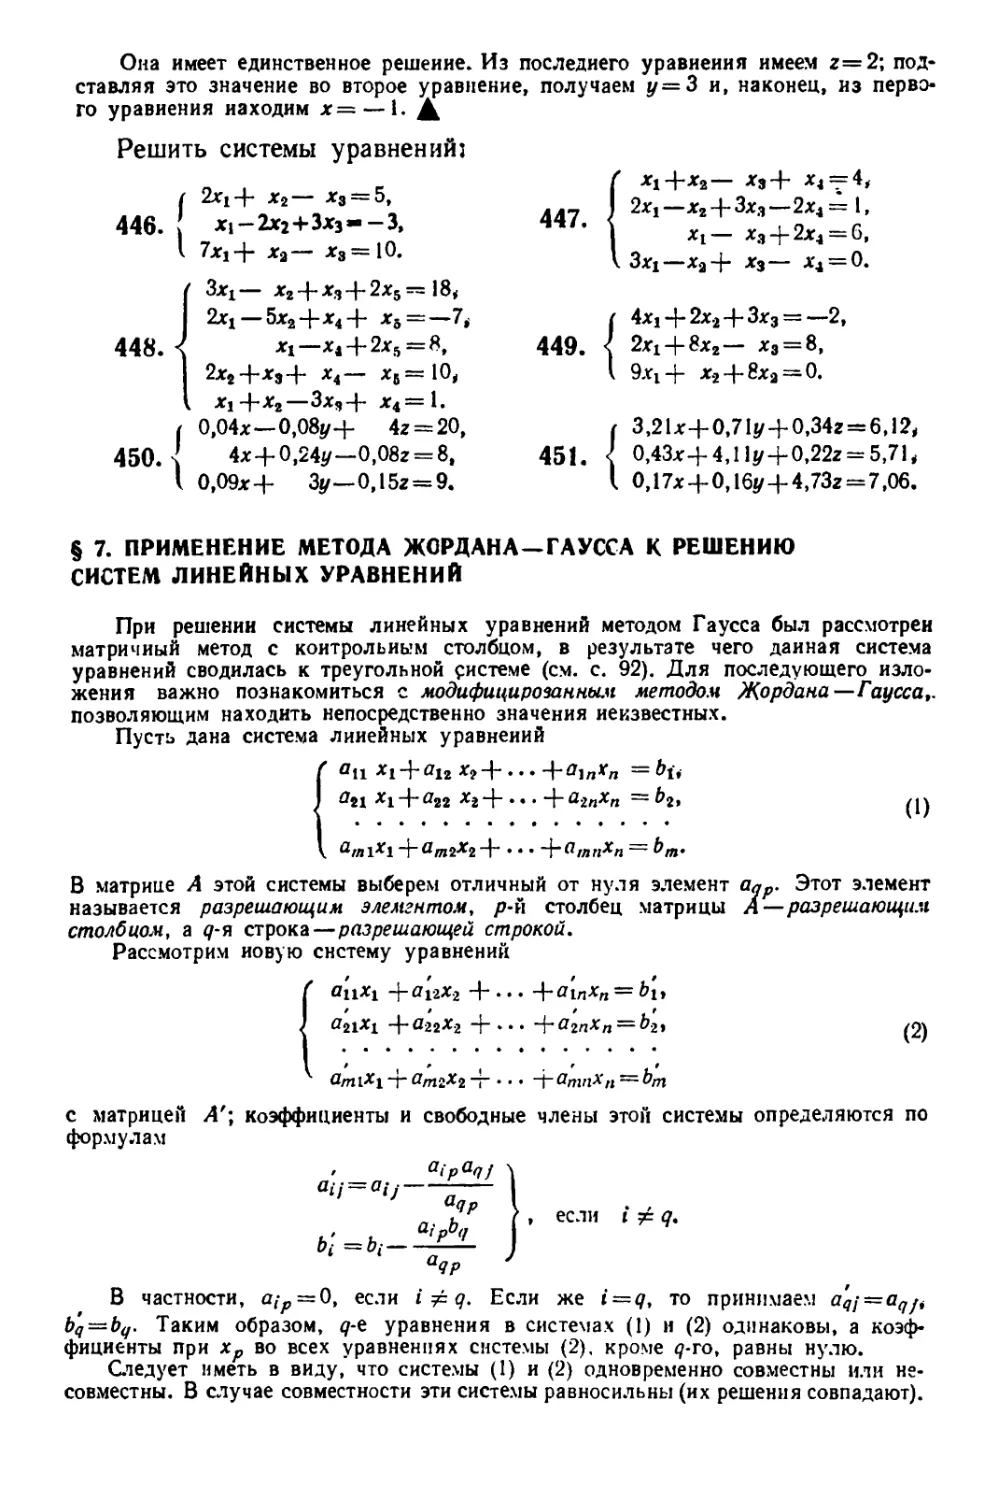 § 7. Применение метода Жордана-Гаусса к решению систем линейных уравнений